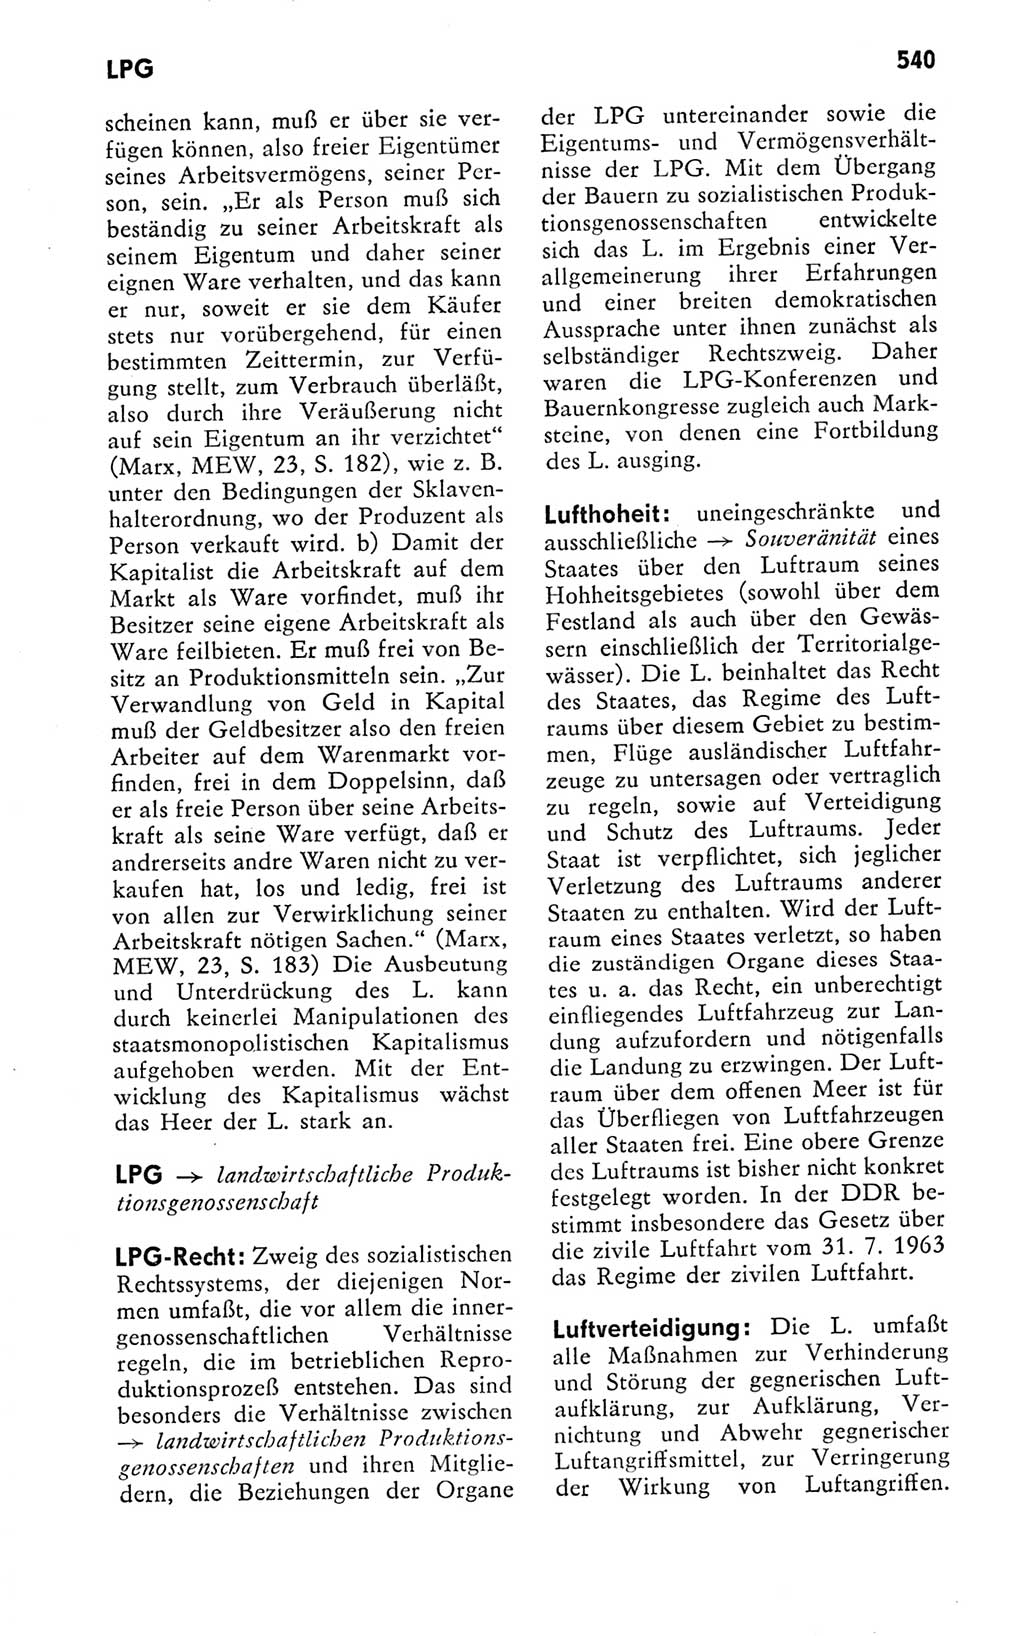 Kleines politisches Wörterbuch [Deutsche Demokratische Republik (DDR)] 1978, Seite 540 (Kl. pol. Wb. DDR 1978, S. 540)